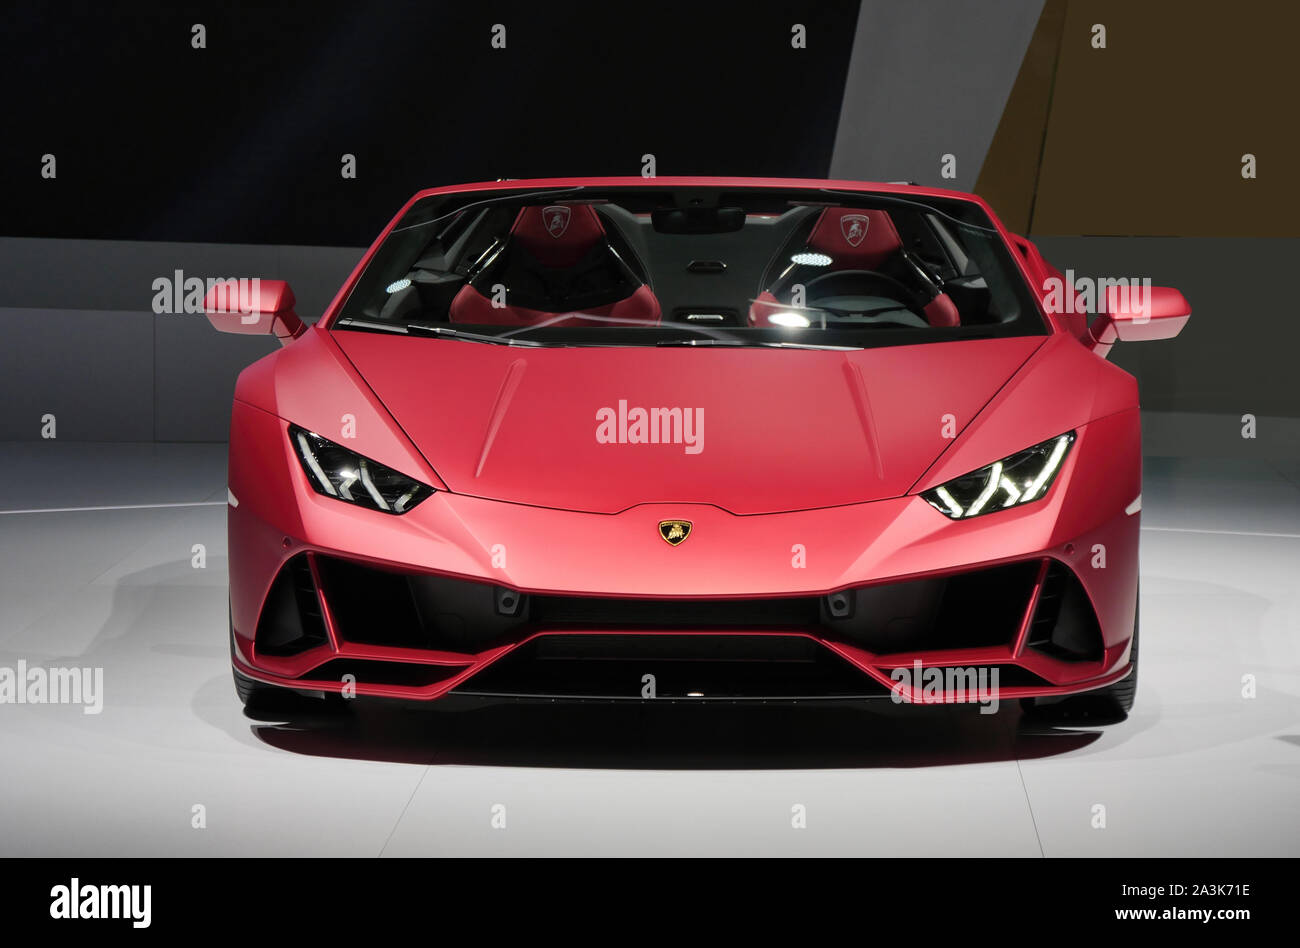 Francoforte, Germania - SEP 19.2019: Lamborghini Sian FKP 37 sports car presentata al salone di Francoforte IAA Motor Show 2019. - Immagine Foto Stock